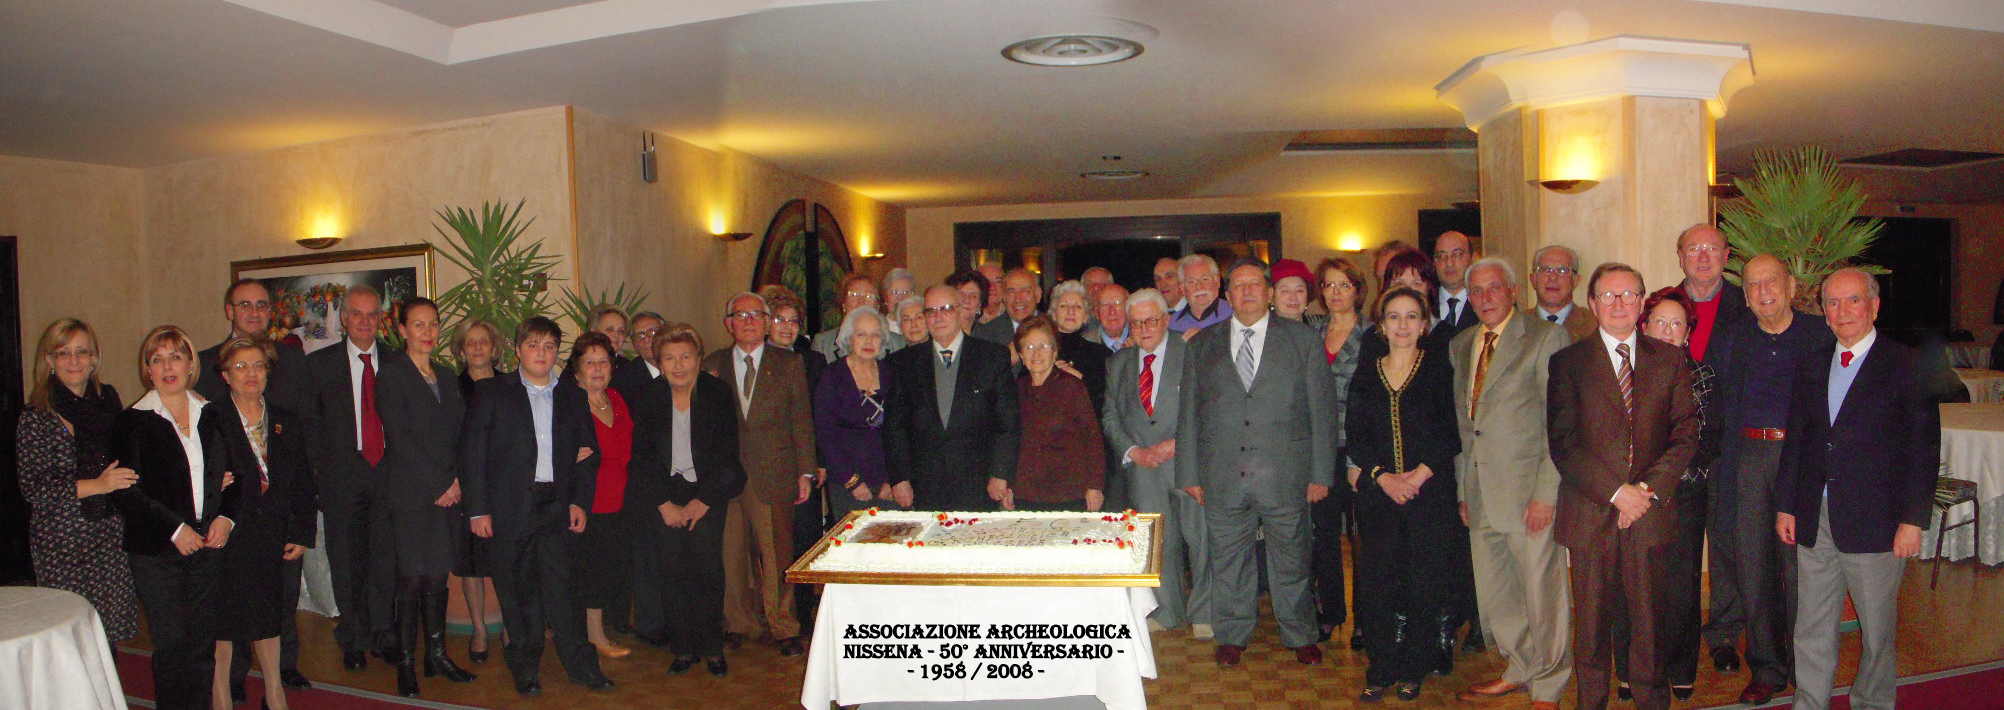 50 anni Associazione Archeologica Nissena